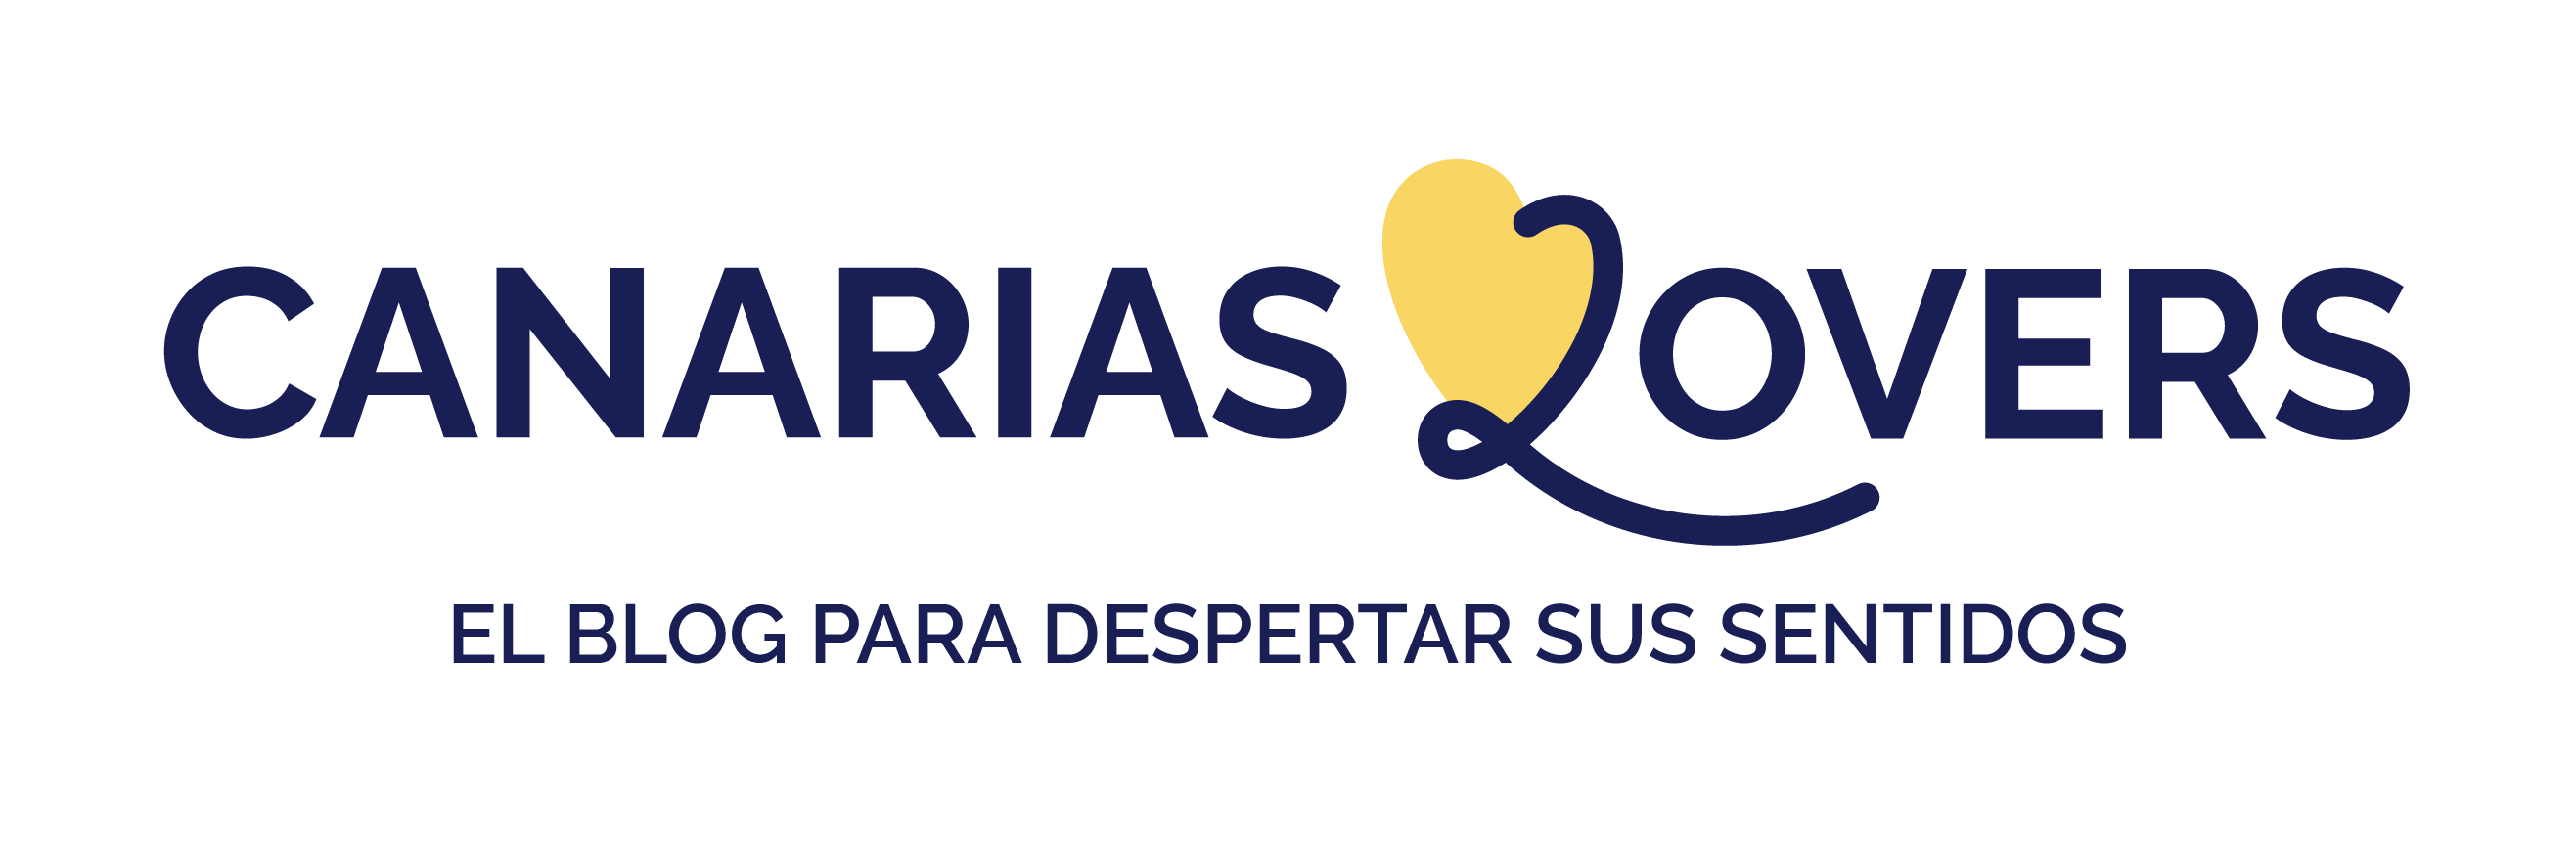 Canarias Lovers Logos ES